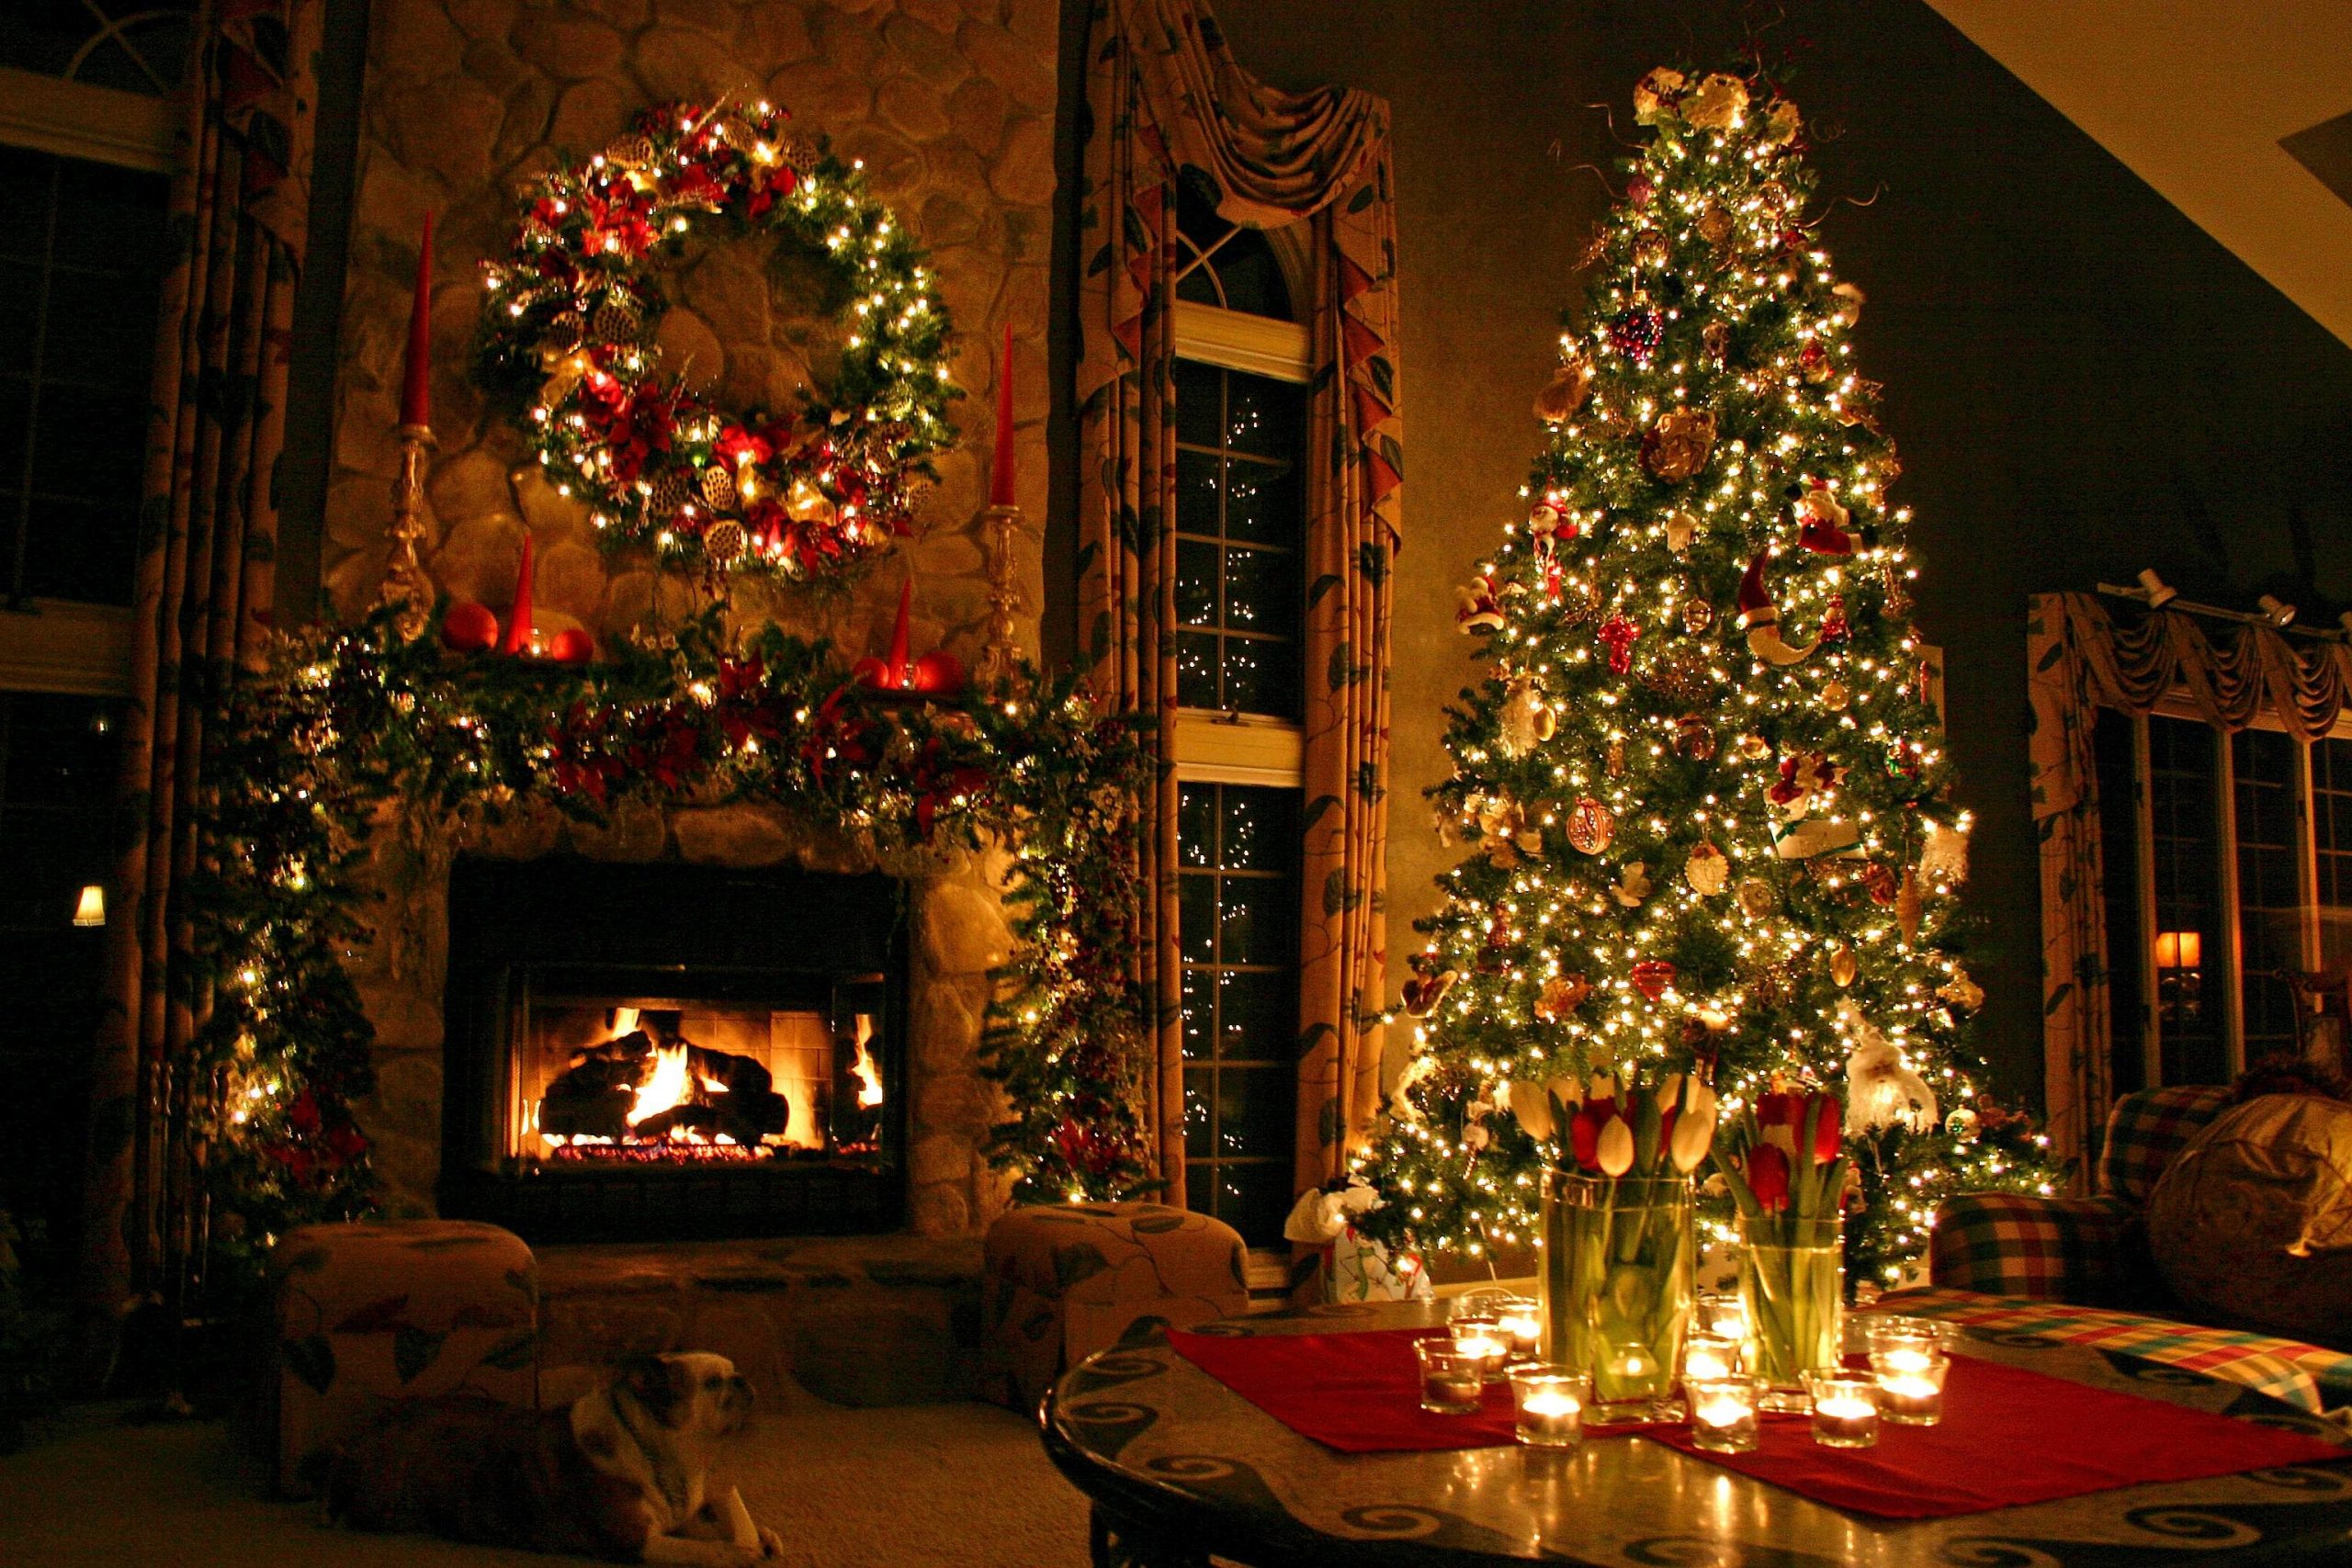 Mùa giáng sinh sắp đến rồi! Hãy cùng ngắm nhìn cây thông Noel tuyệt đẹp được trang trí nghệ thuật với những bóng đèn lung linh, tạo nên một không khí ấm áp và huyền diệu cho ngày lễ cuối năm. Xem ngay hình ảnh để cảm nhận sự lộng lẫy của cây thông Noel!